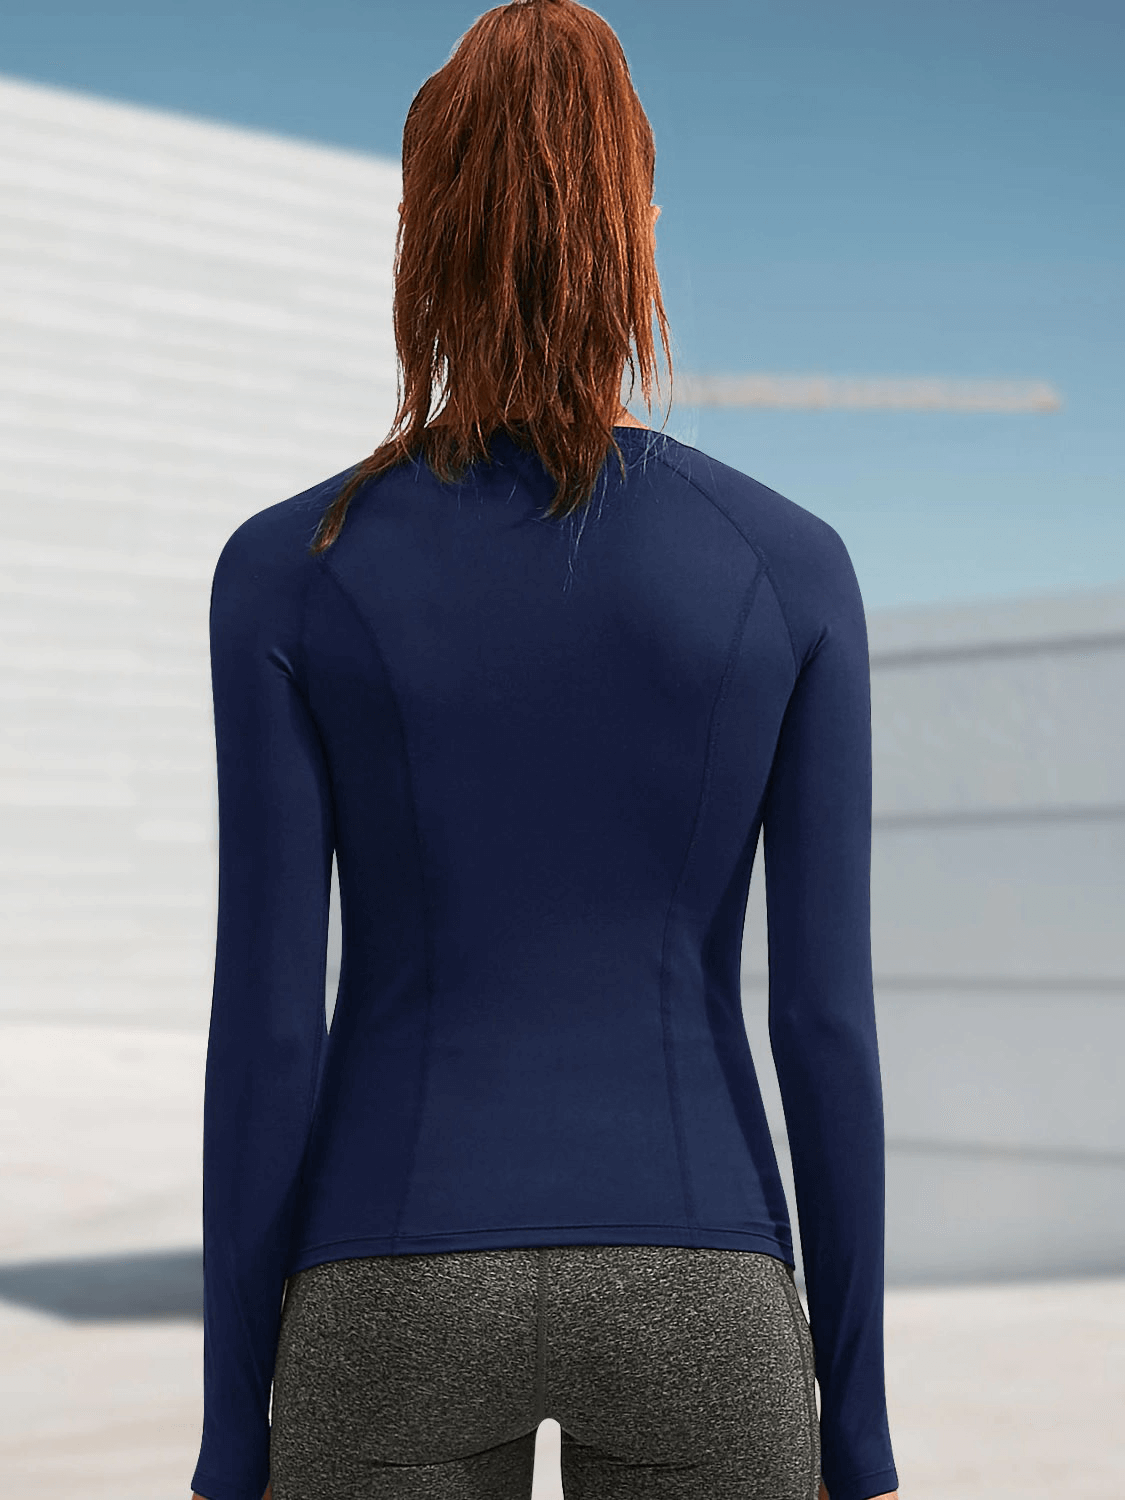 Daumenloch-Design, warmes Laufoberteil / Kompressions-Fitnesskleidung für Damen – SF0057